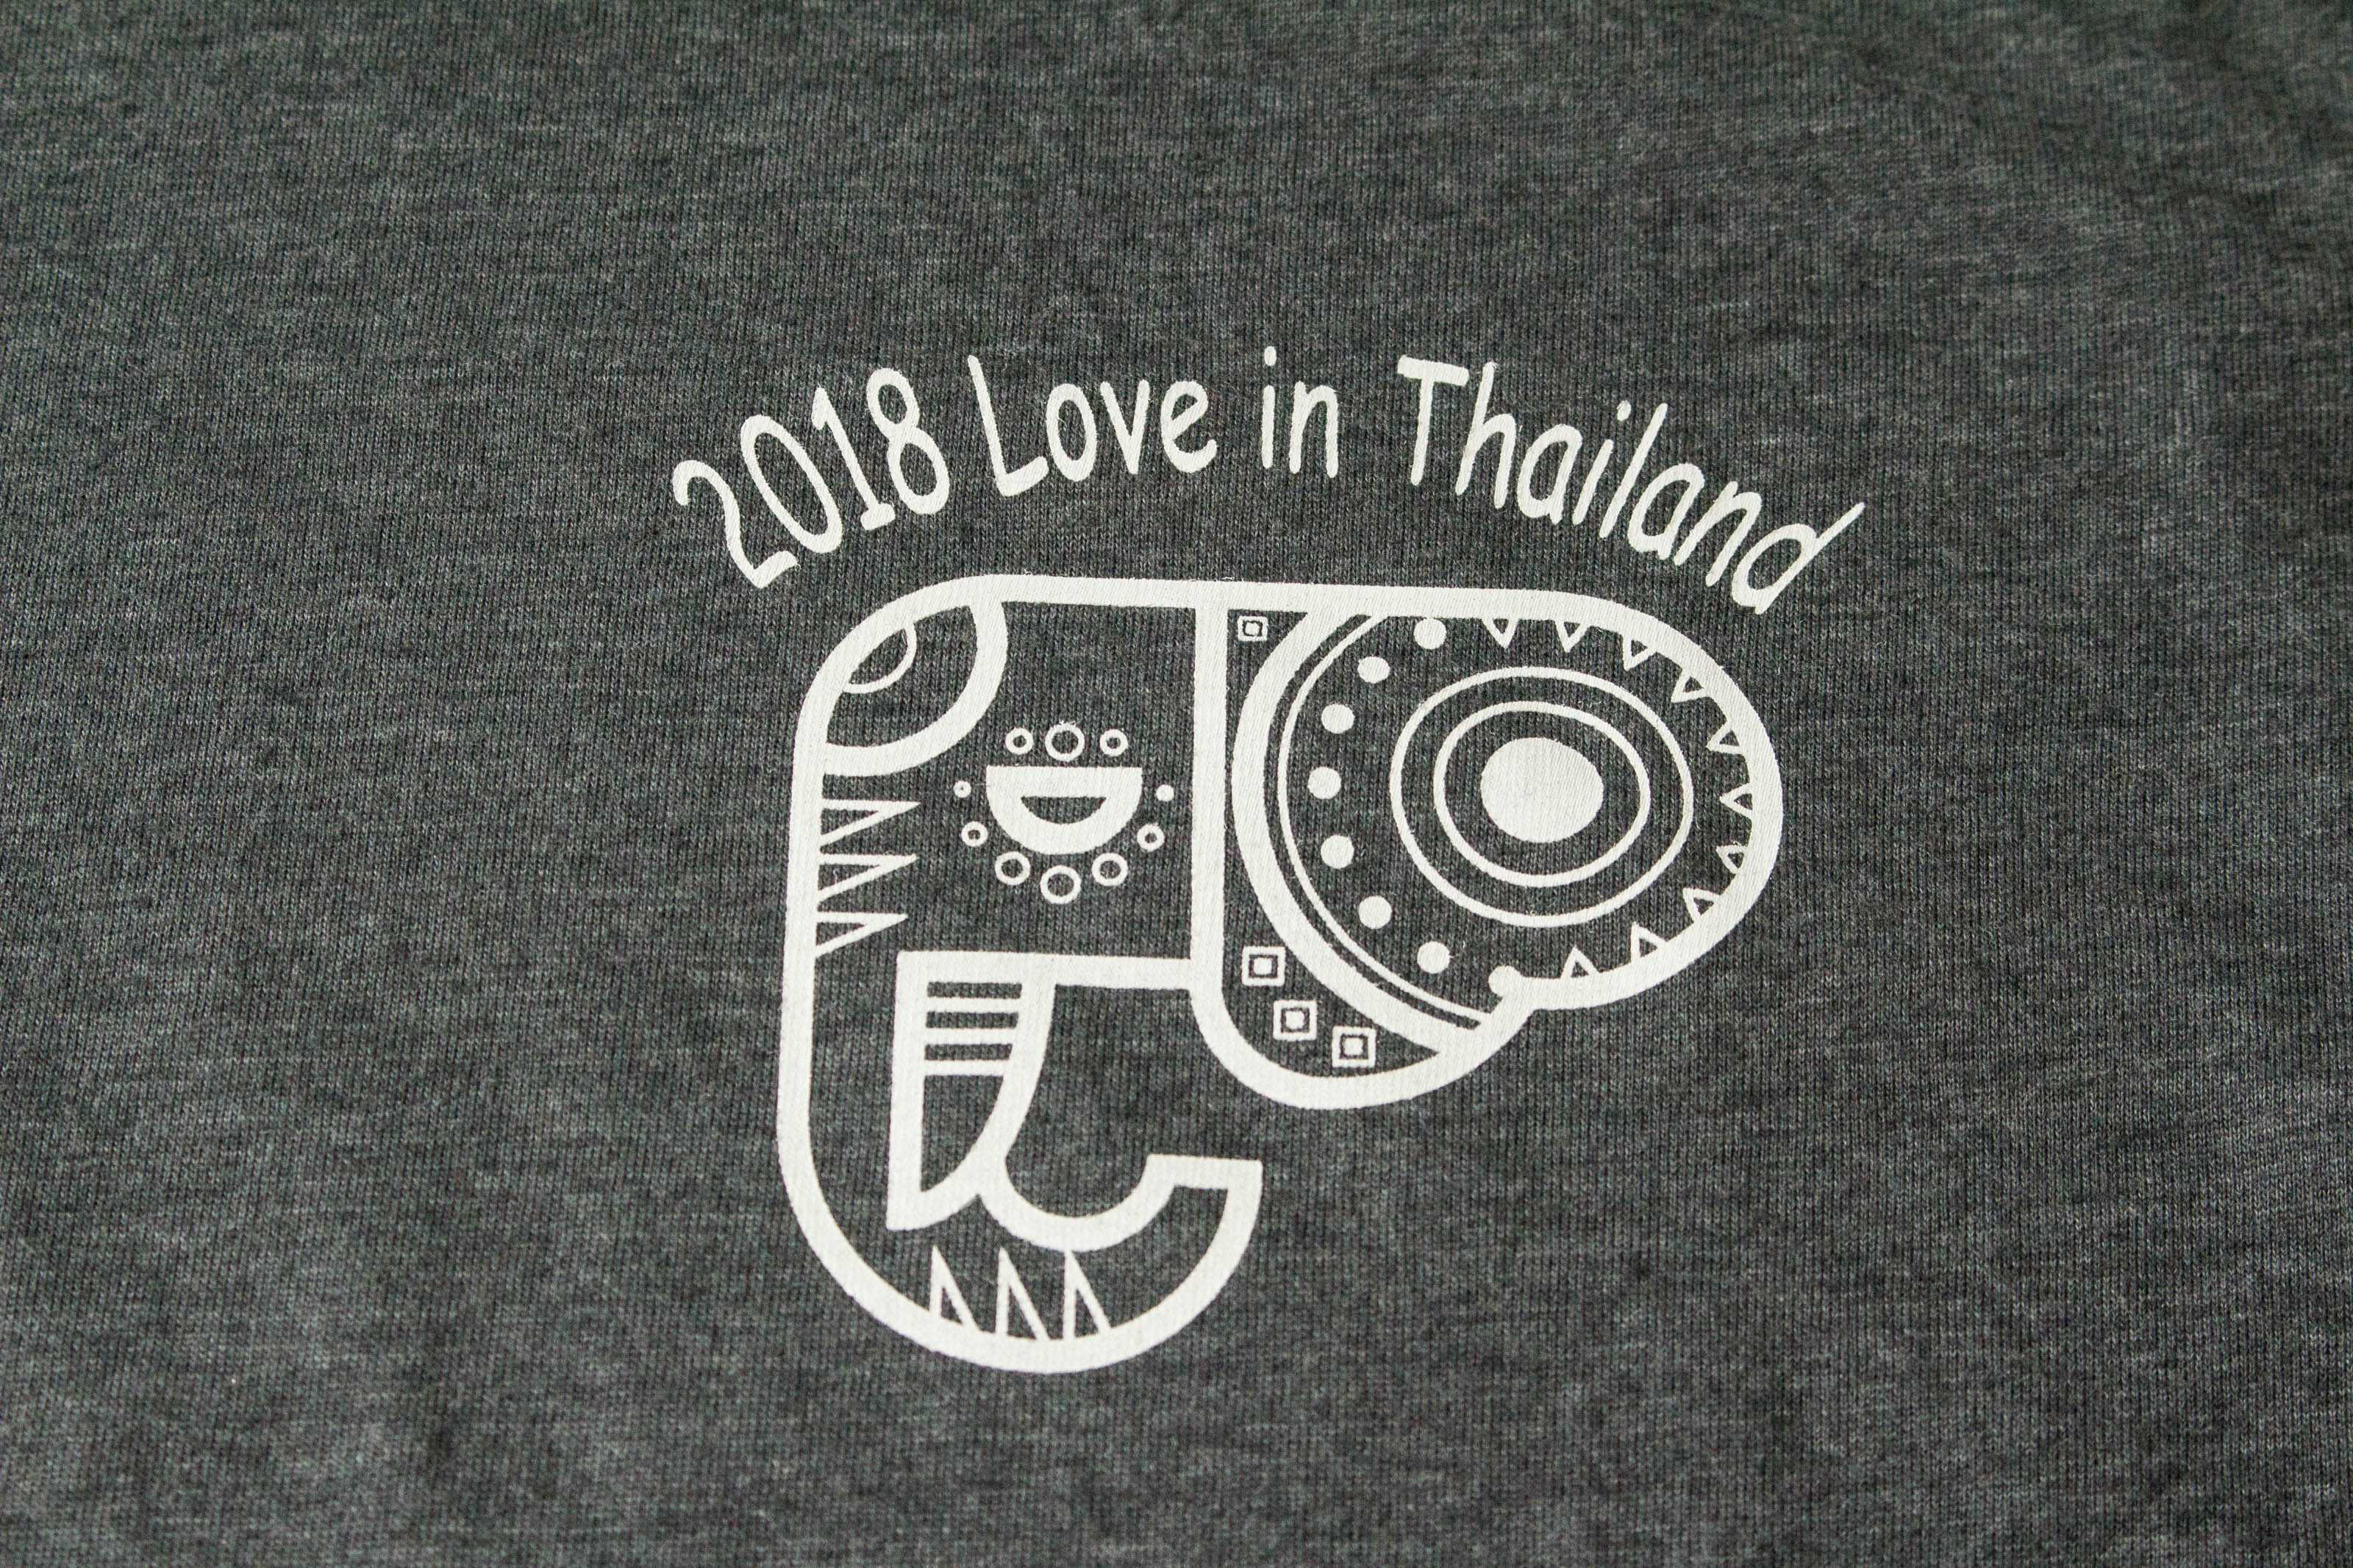 客製化T恤- 2018愛在泰國 客製T恤的第2張圖(客製化公司制服、班服製作、團體服製作等示意或作品圖)